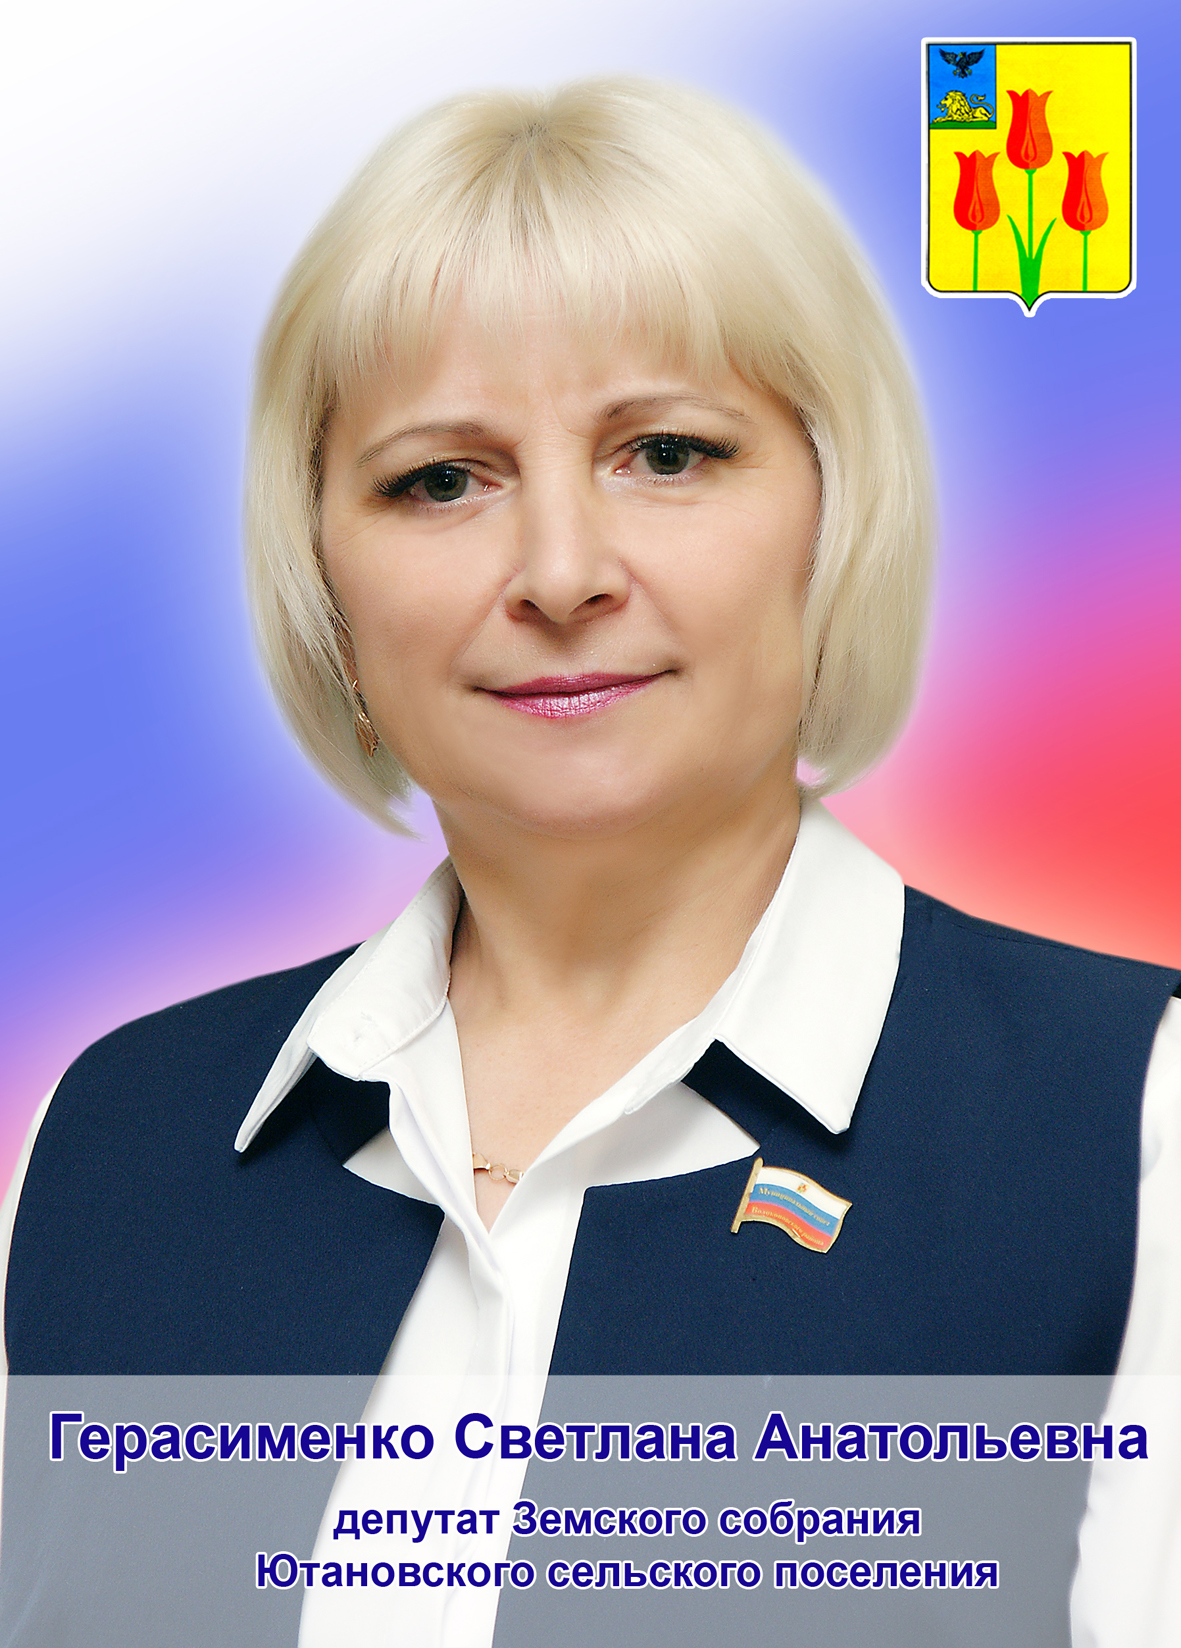 Герасименко Светлана Анатольевна.